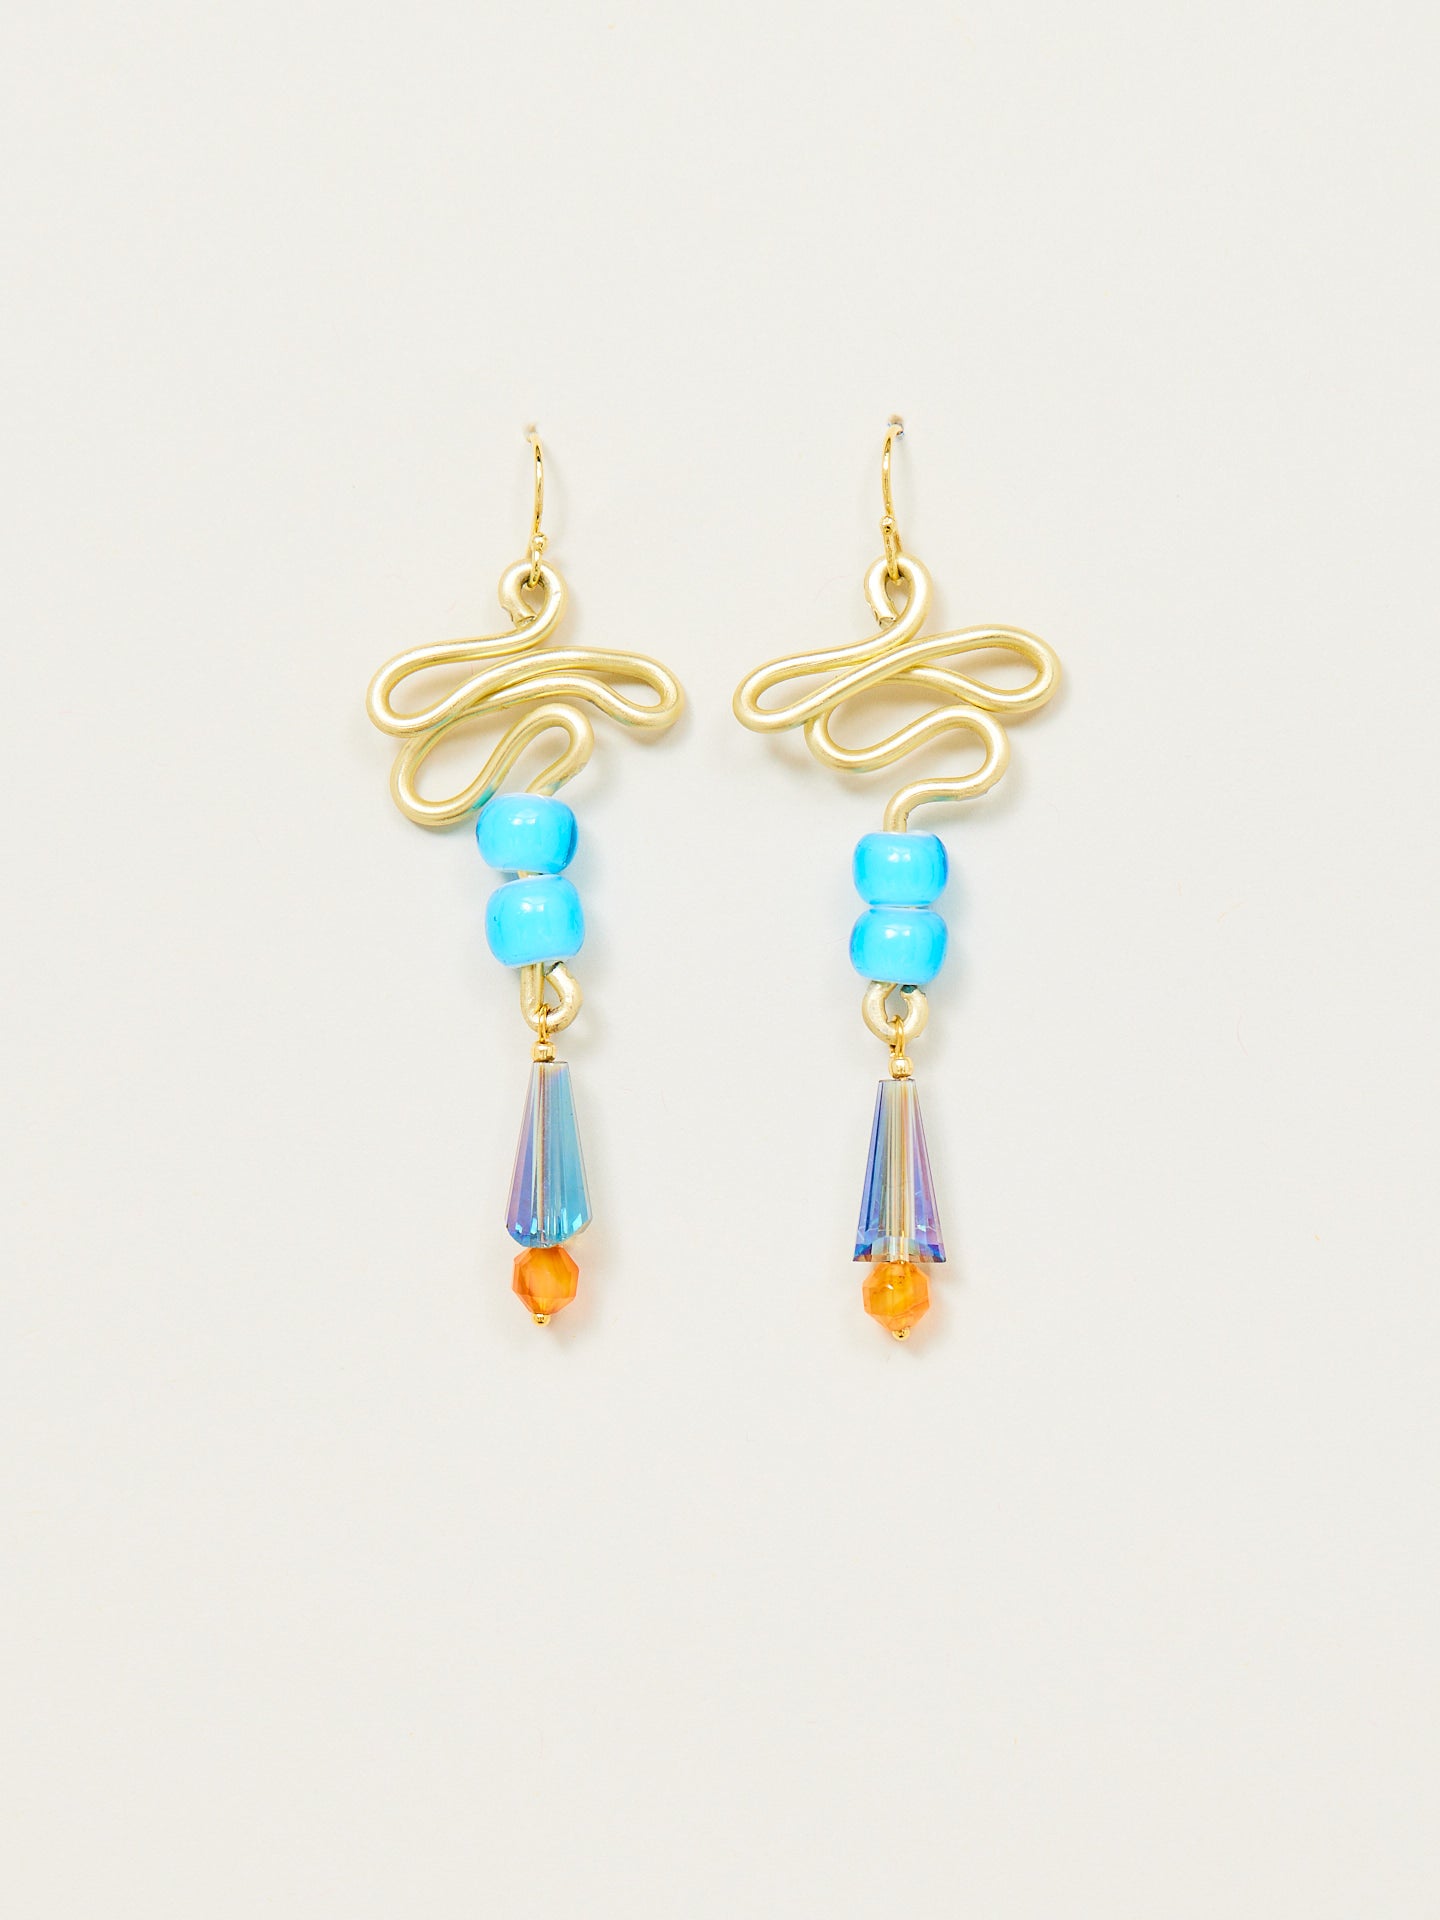 Ohrringe in kreativem Design mit bunten Perlen, besonderen Steinen und goldenem Anteil.